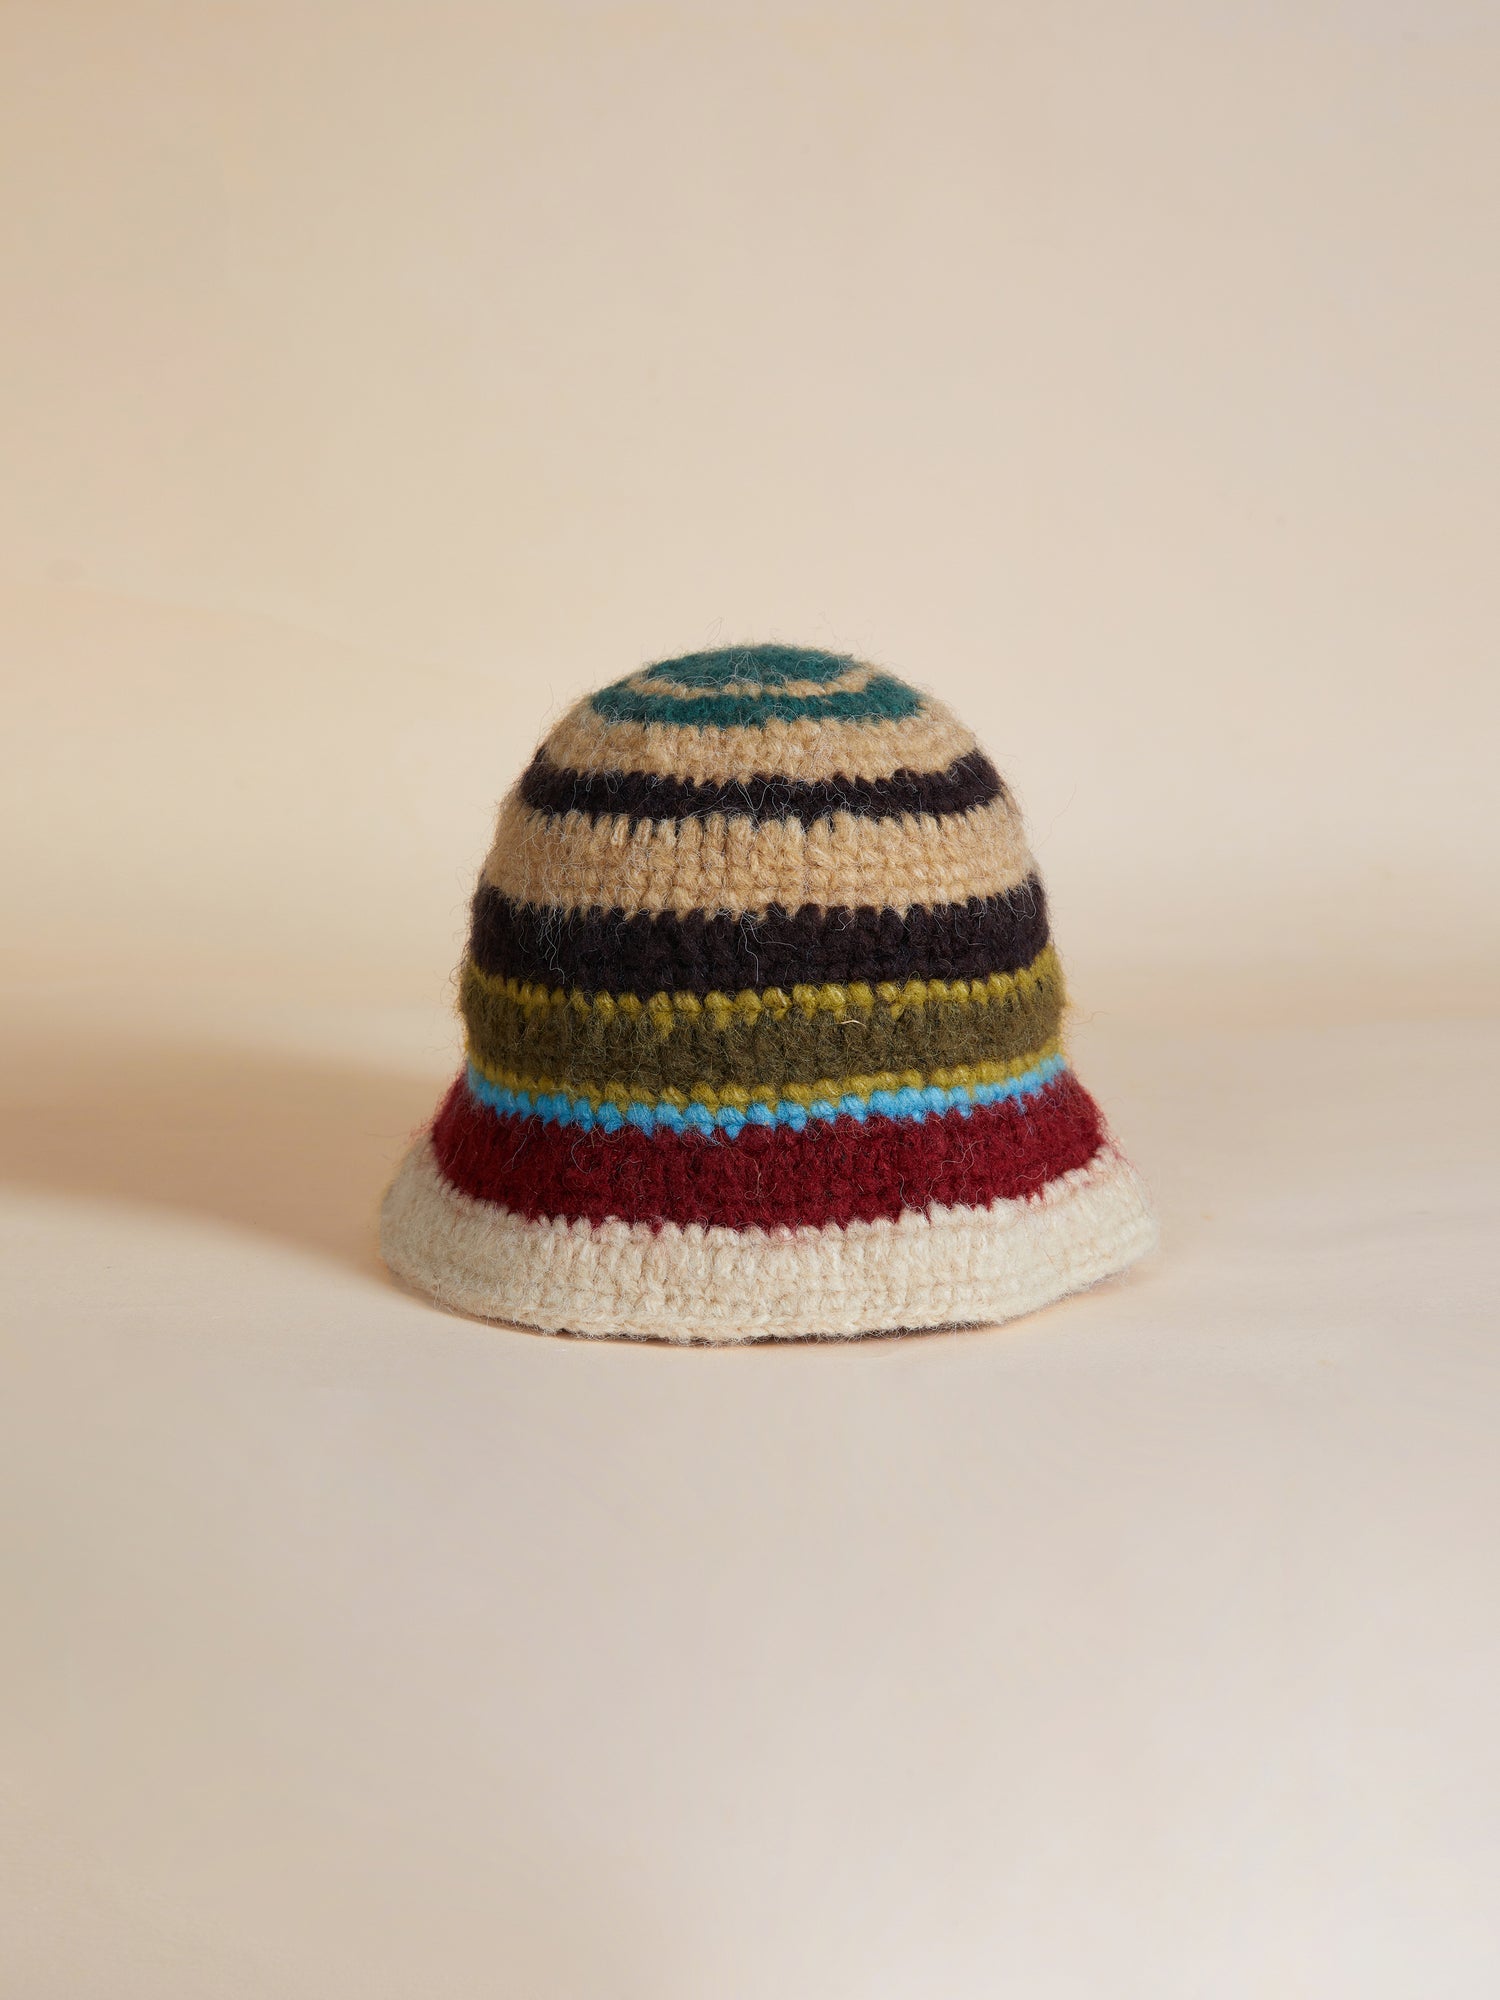 A Found Stripe Knit Beanie bucket hat on a beige surface.